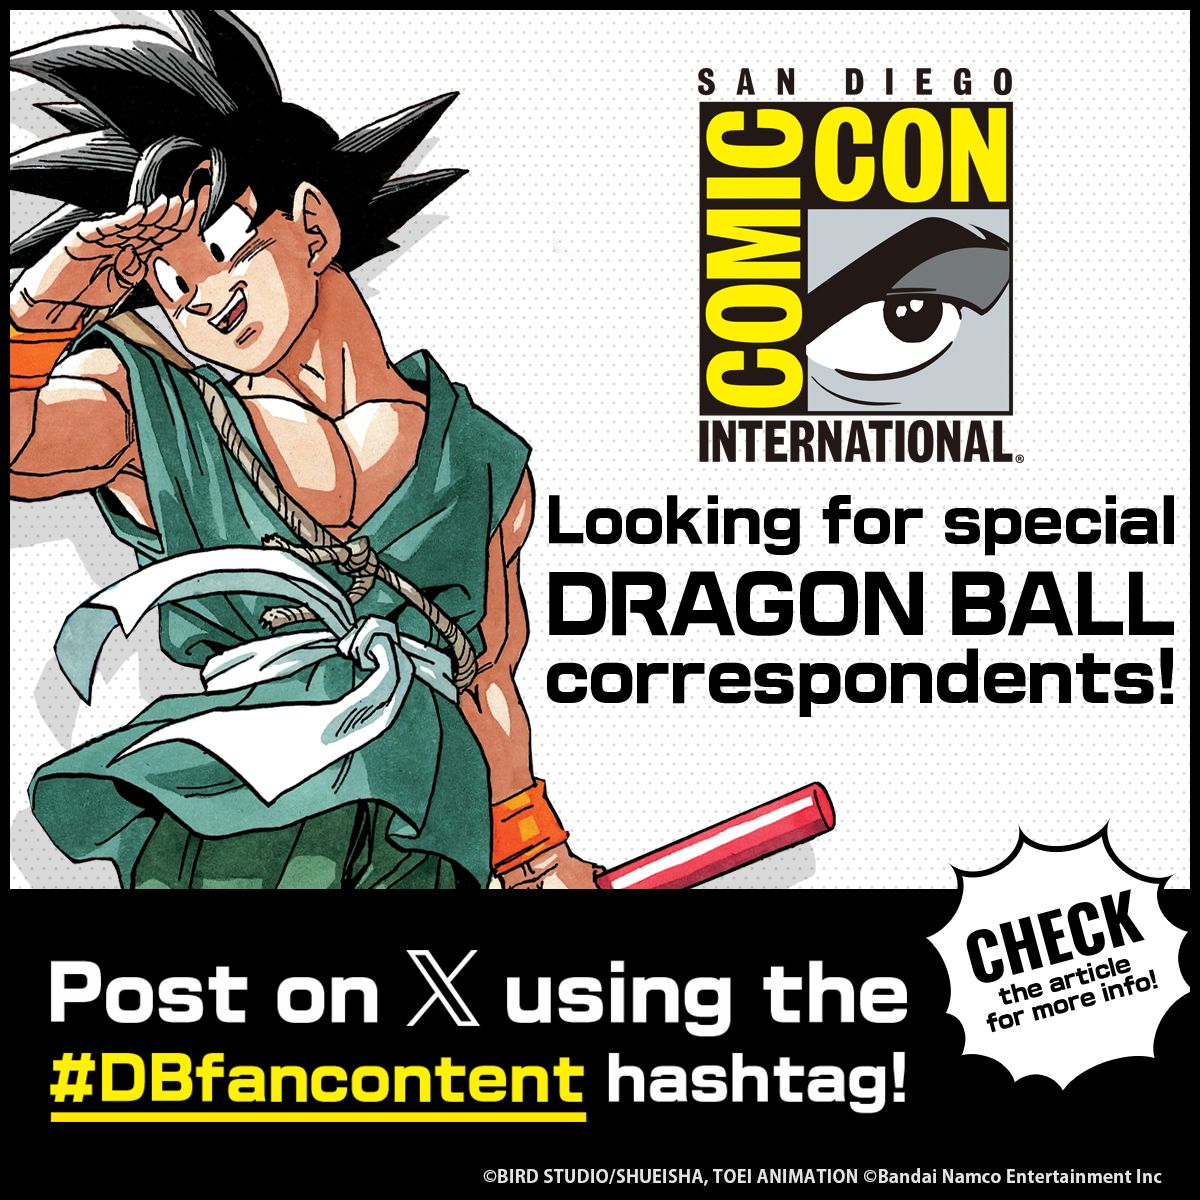 Buscando corresponsales especiales para Comic-Con International: ¡San Diego! ¡Simplemente publique en X usando el Hashtag DBfancontent para participar!